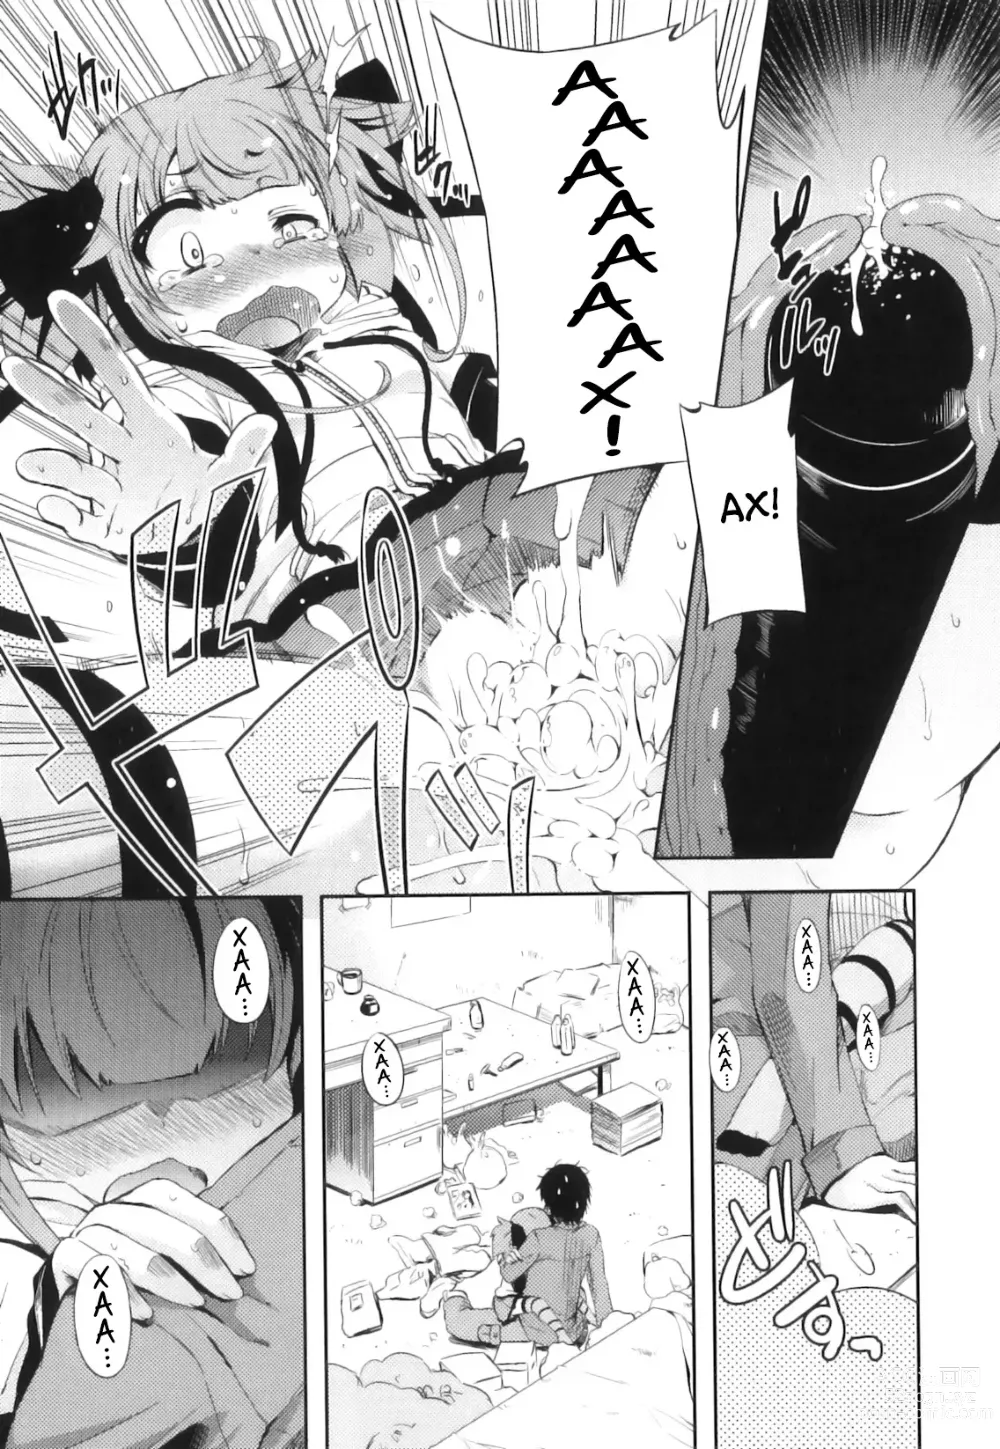 Page 23 of manga Это просто нереально!